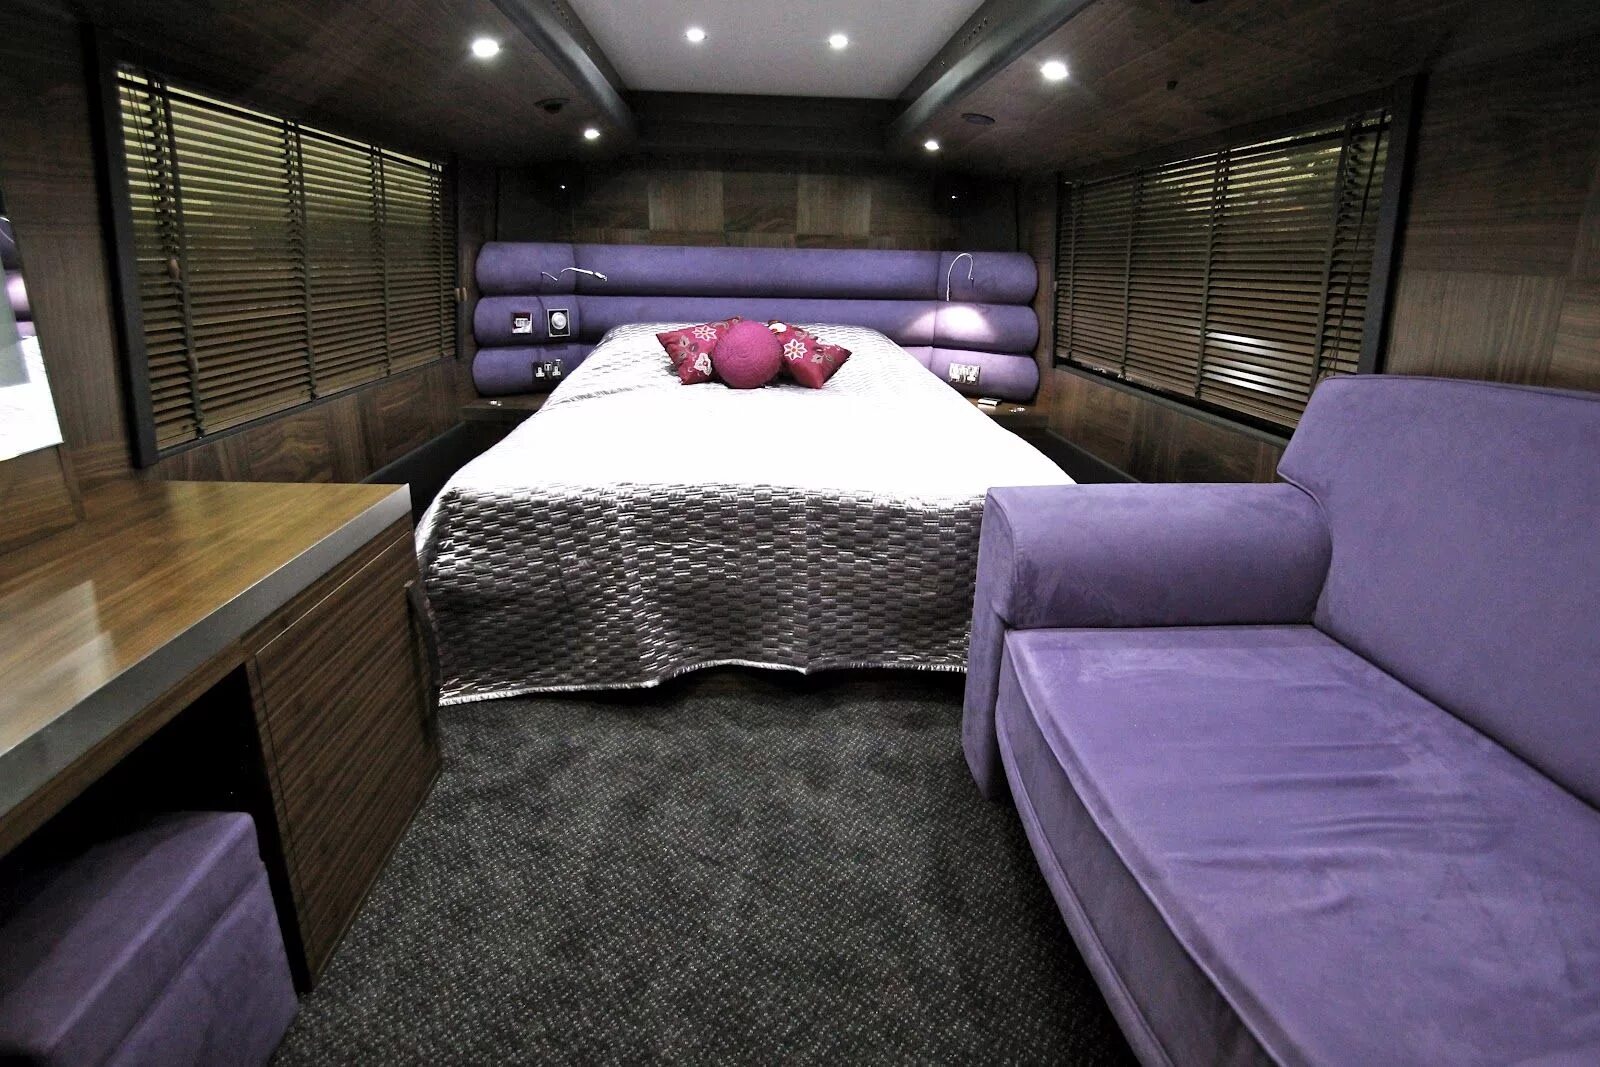 Автобус с941. Спальный автобус. Двухэтажный автобус со спальными местами. Кровать автобус. Туристические автобусы со спальными местами.